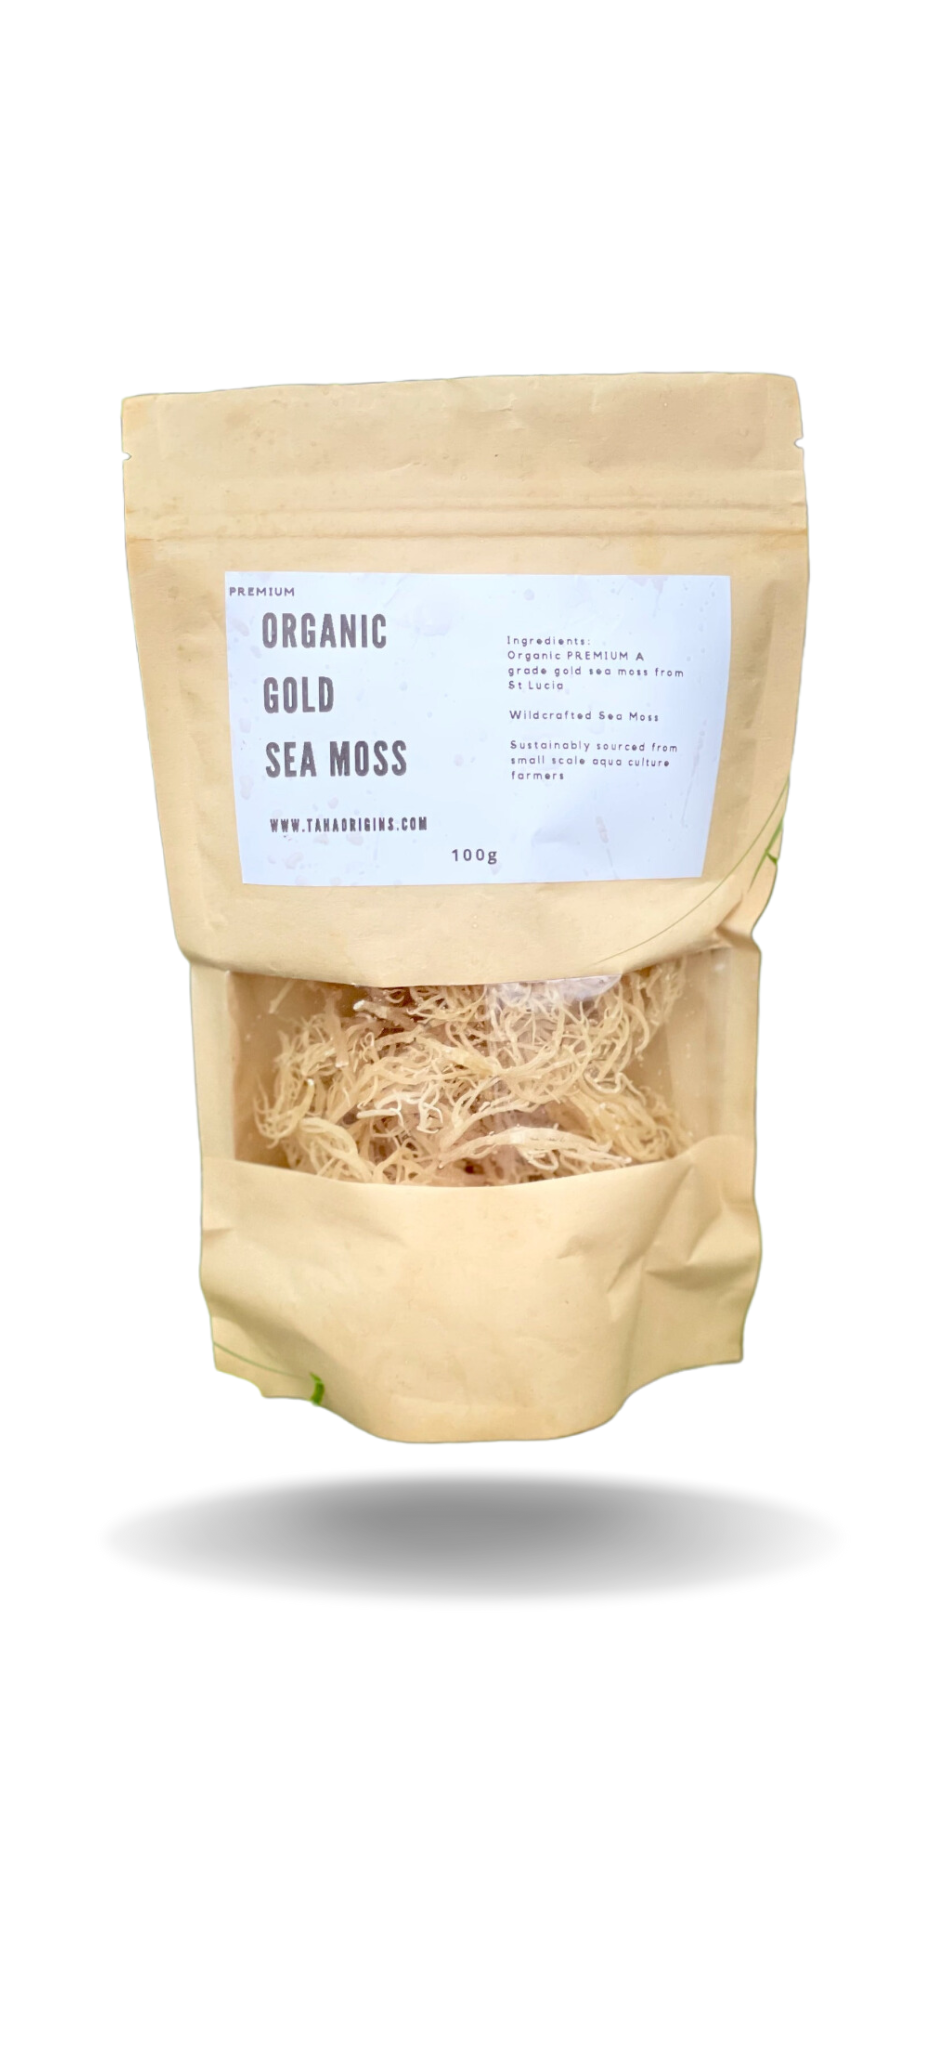 Phytosanitary certified Organic Premium Golden dried Seamoss